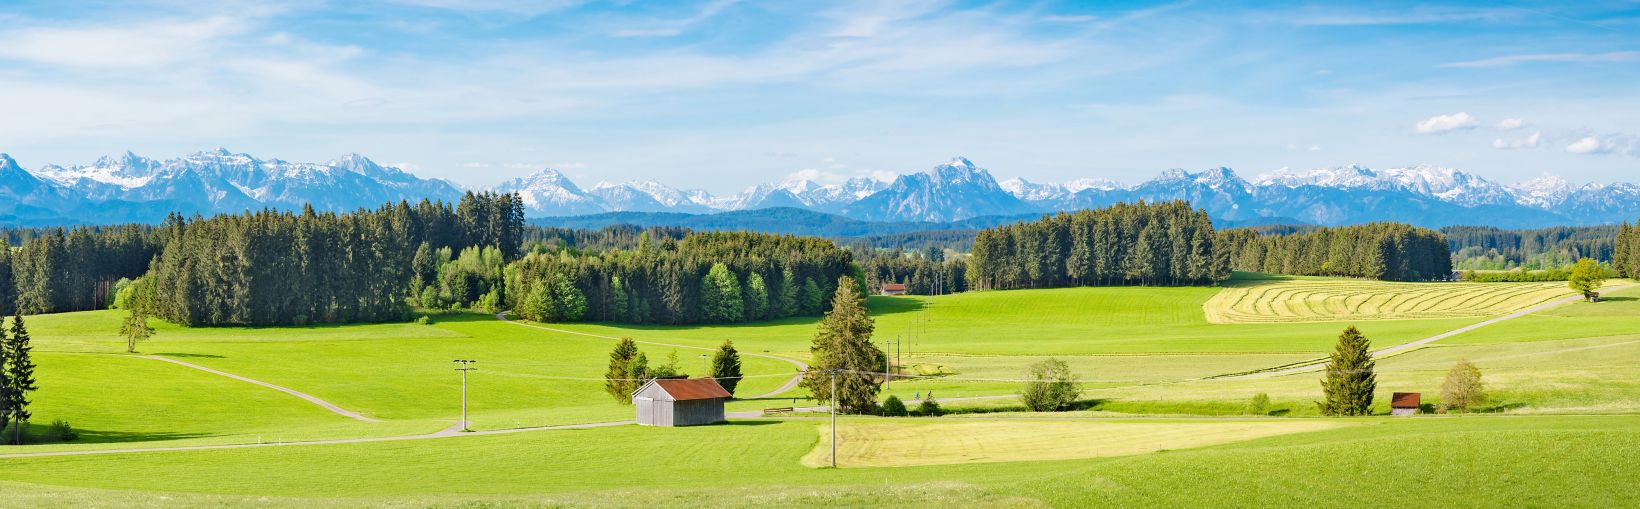 Allgäu, rødtaggede gårdbygninger i et stort grønt landskab på marker og skov med en dramatisk baggrund af snedækkede bjerge i horisonten